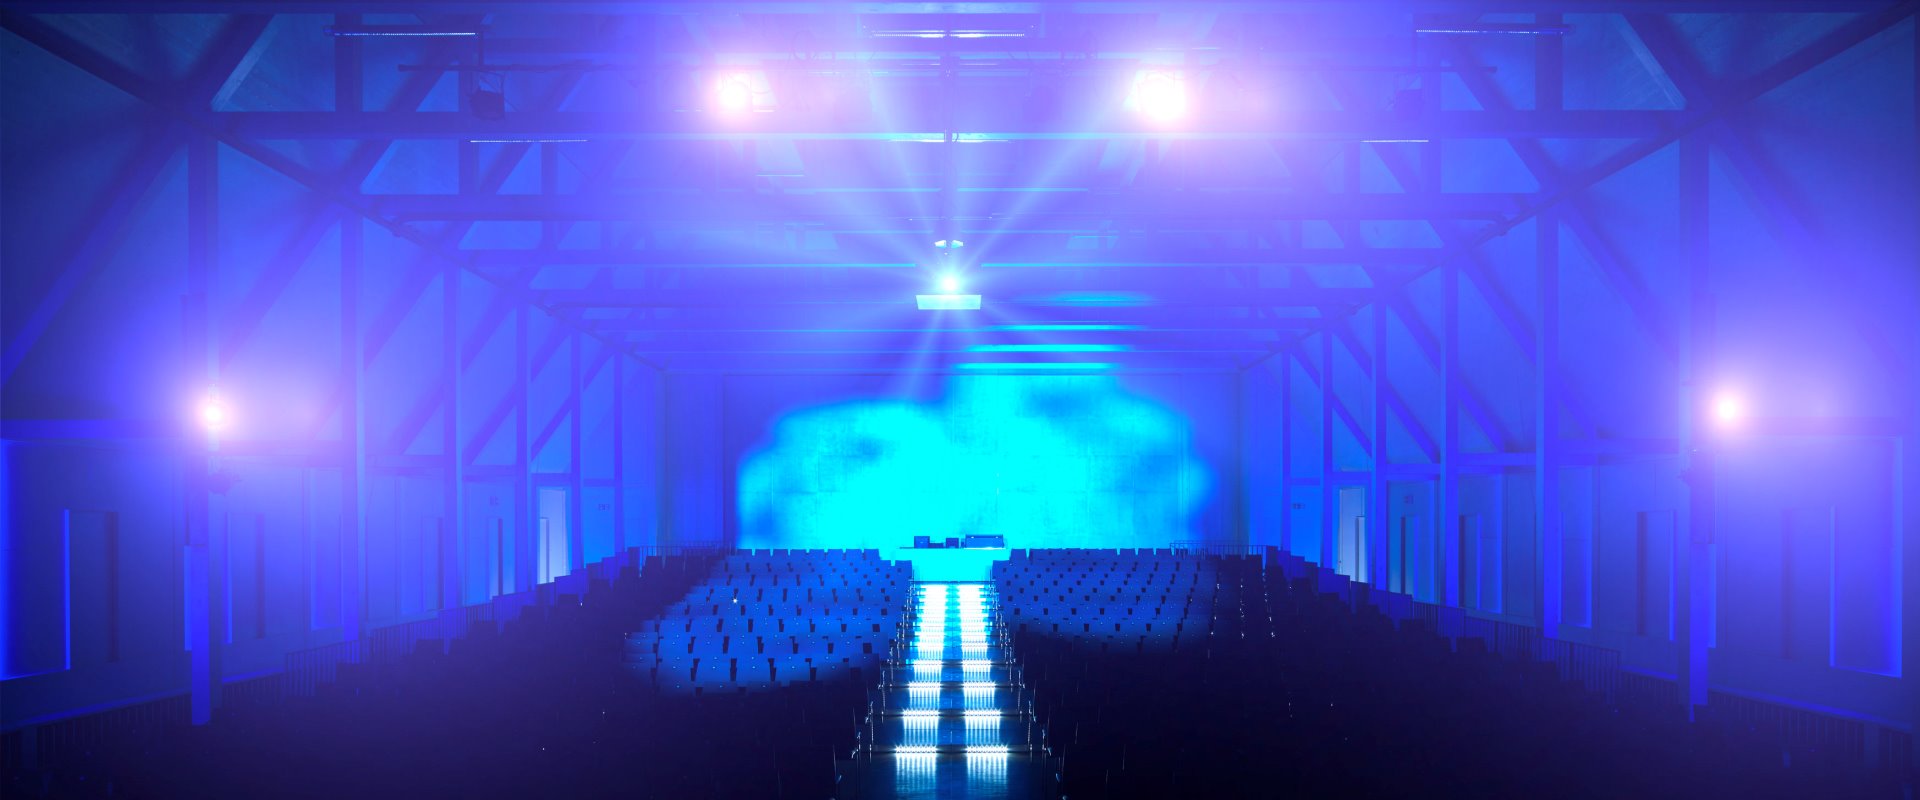 Raiffeisen-Saal Reihenbestuhlung gestuft mit Beleuchtung blau Forum Altötting 